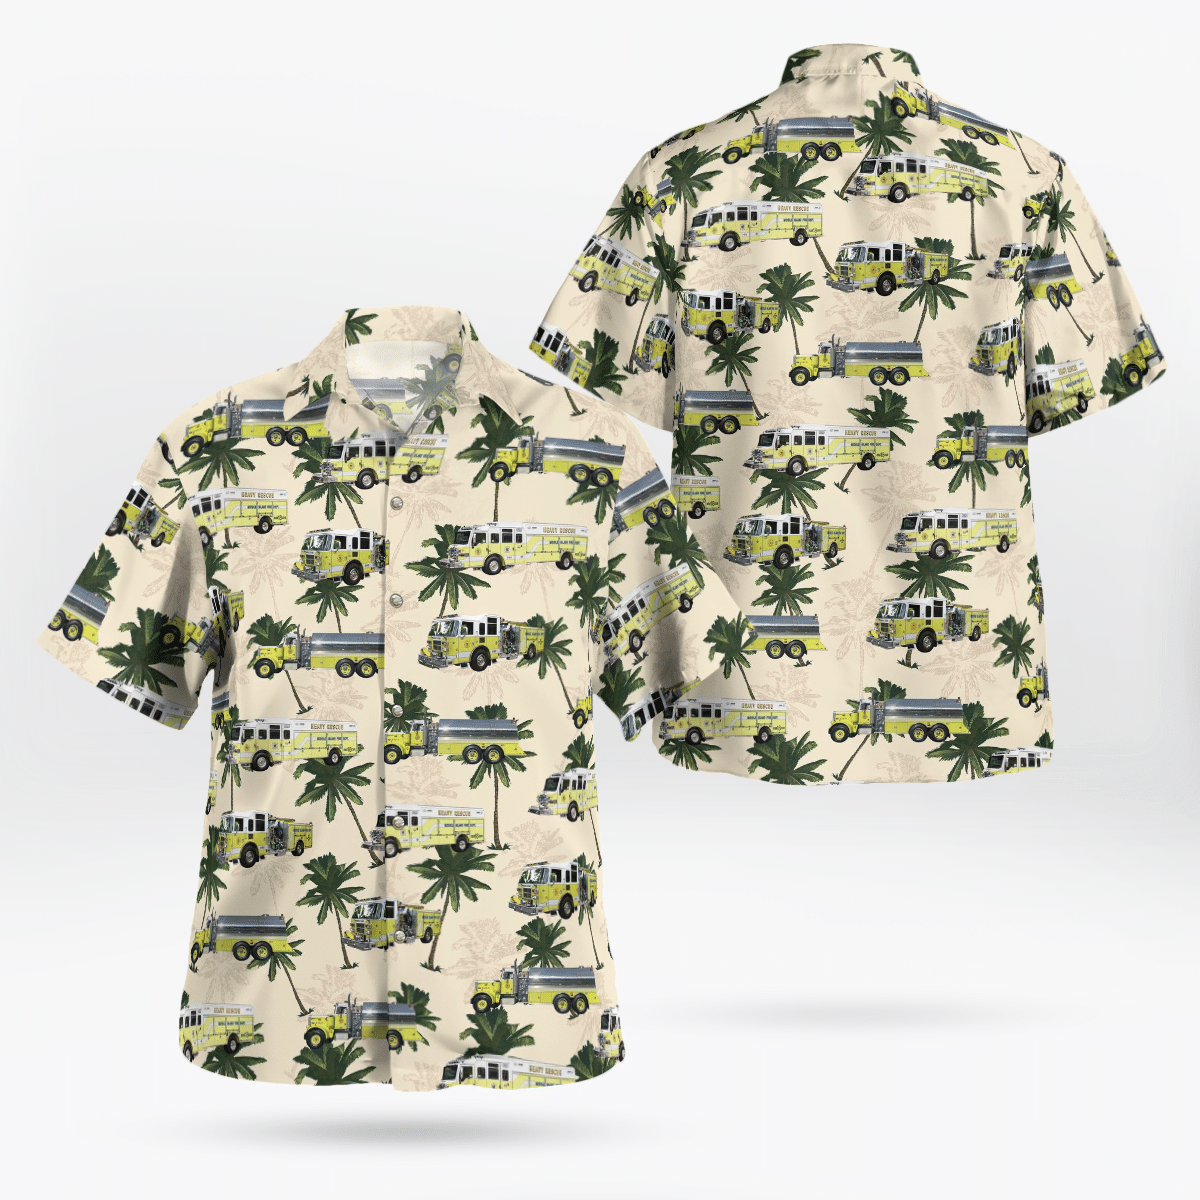 You won't regret buying these Aloha Shirt 207